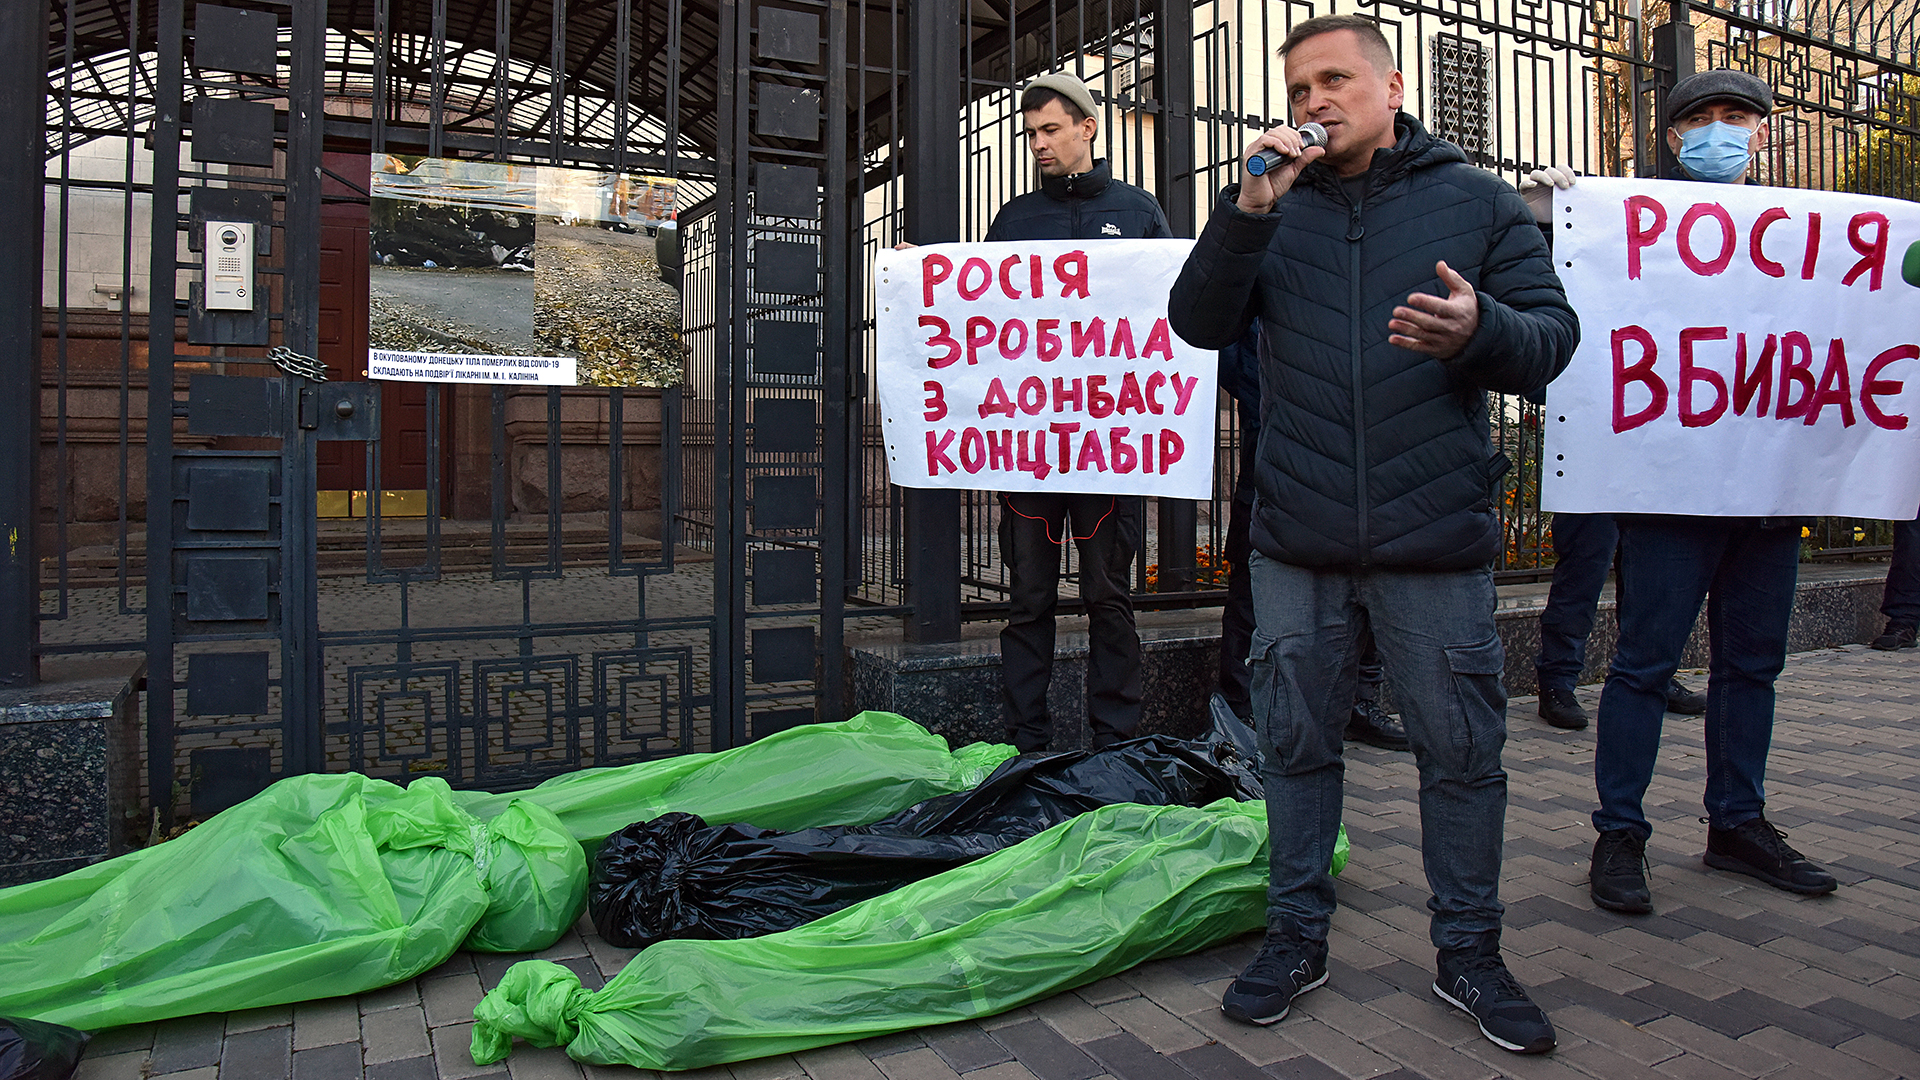 Vor der Botschaft der Russischen Föderation in Kiew findet eine Protestaktion statt. | imago images/Ukrinform